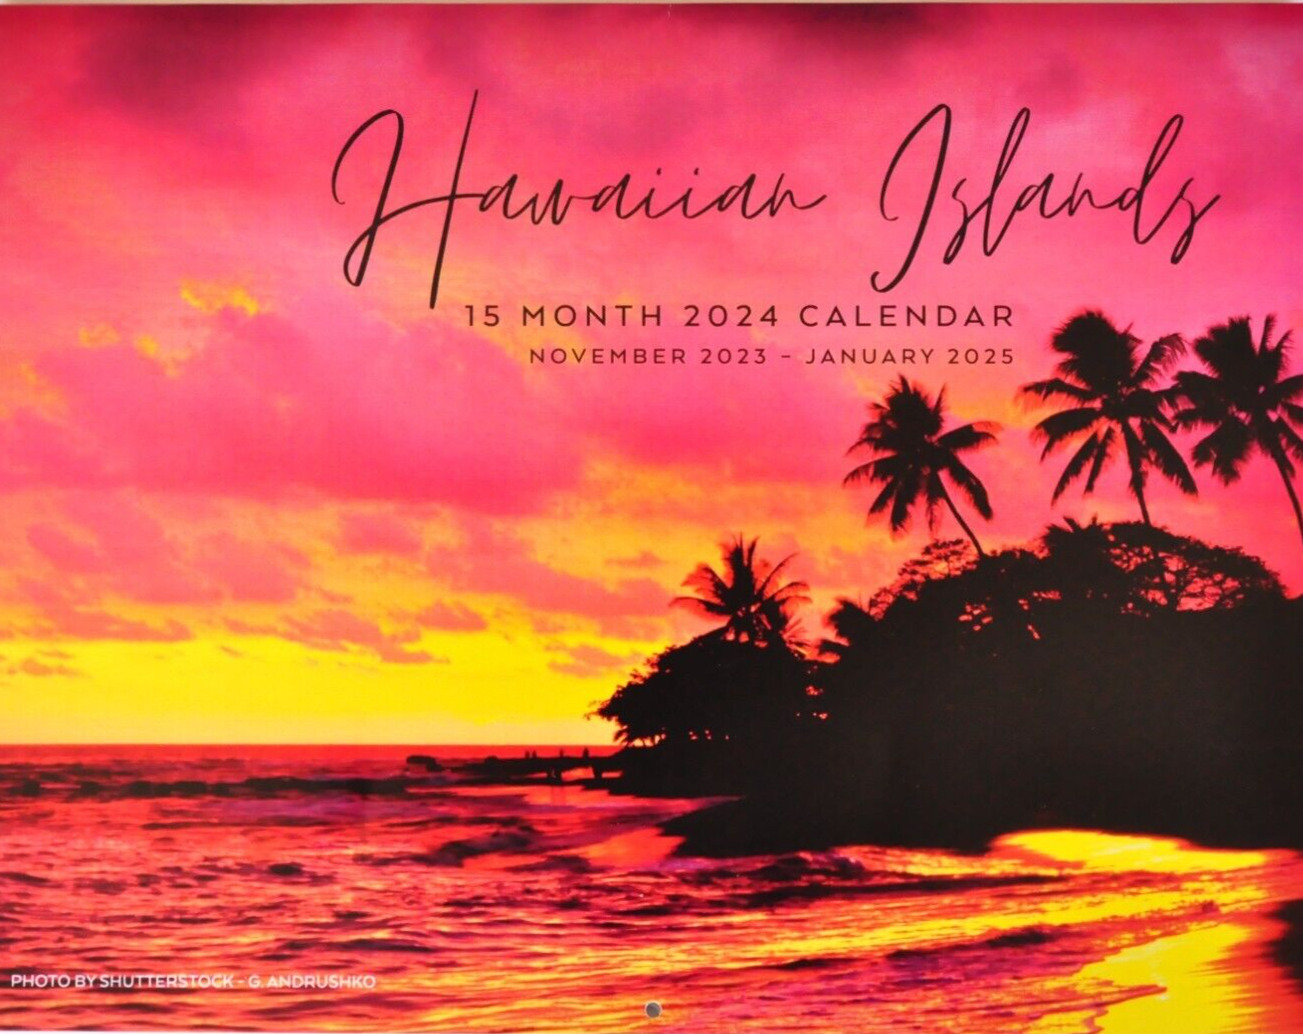 Stunning HAWAII Hawaiian Islands 2024 WALL CALENDAR Maui Kona Oahu Big Beaches